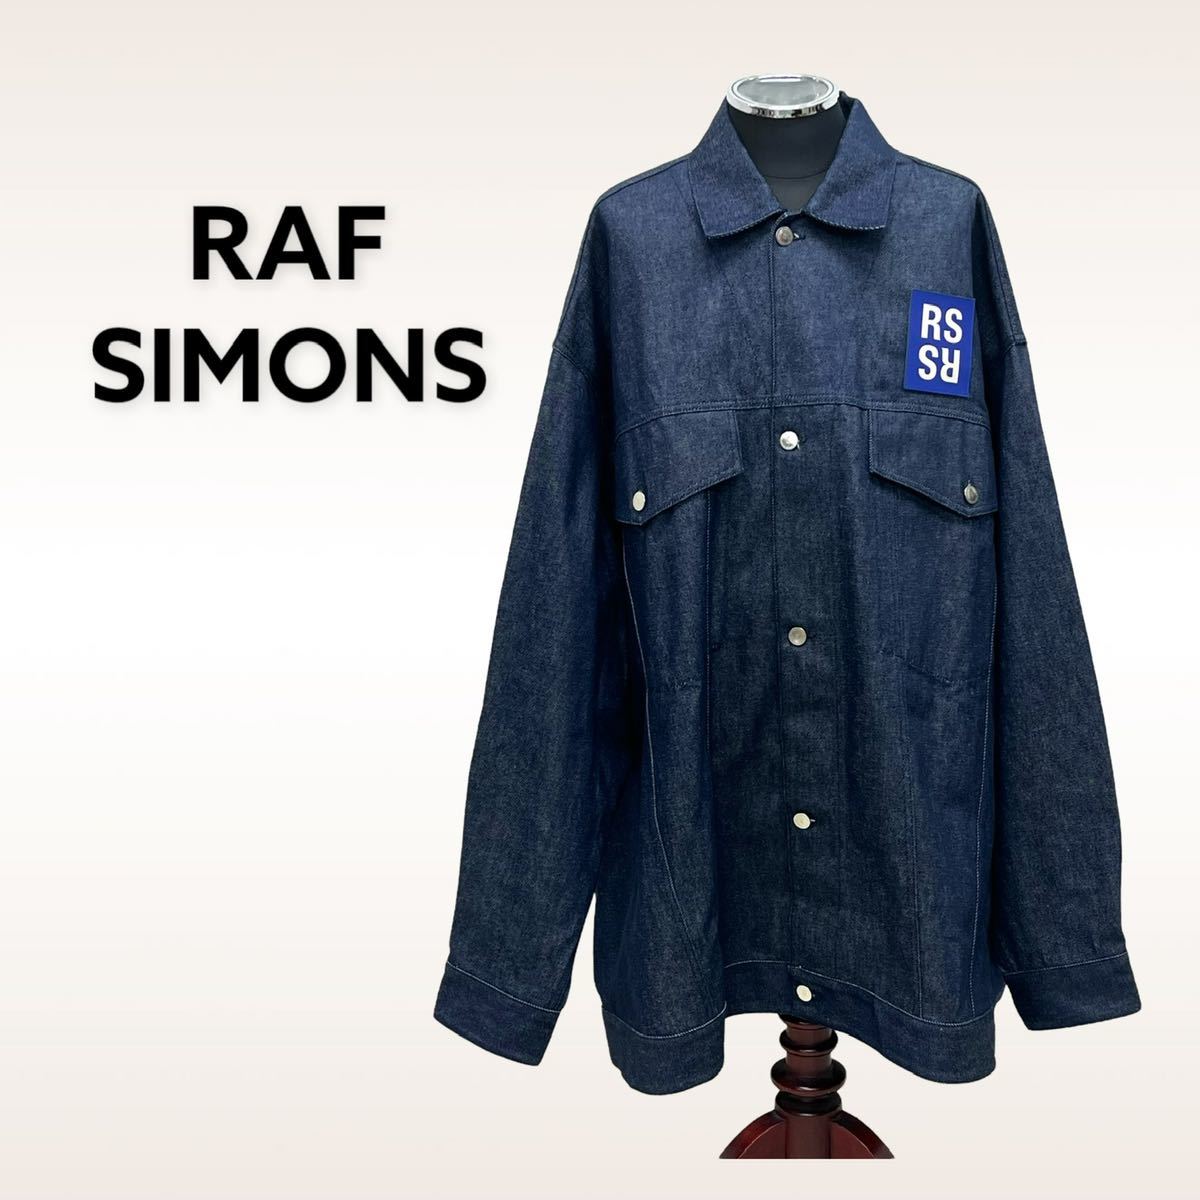 RAF SIMONS(21AW) ジッパーデニム デニム/ジーンズ パンツ メンズ 値引き率